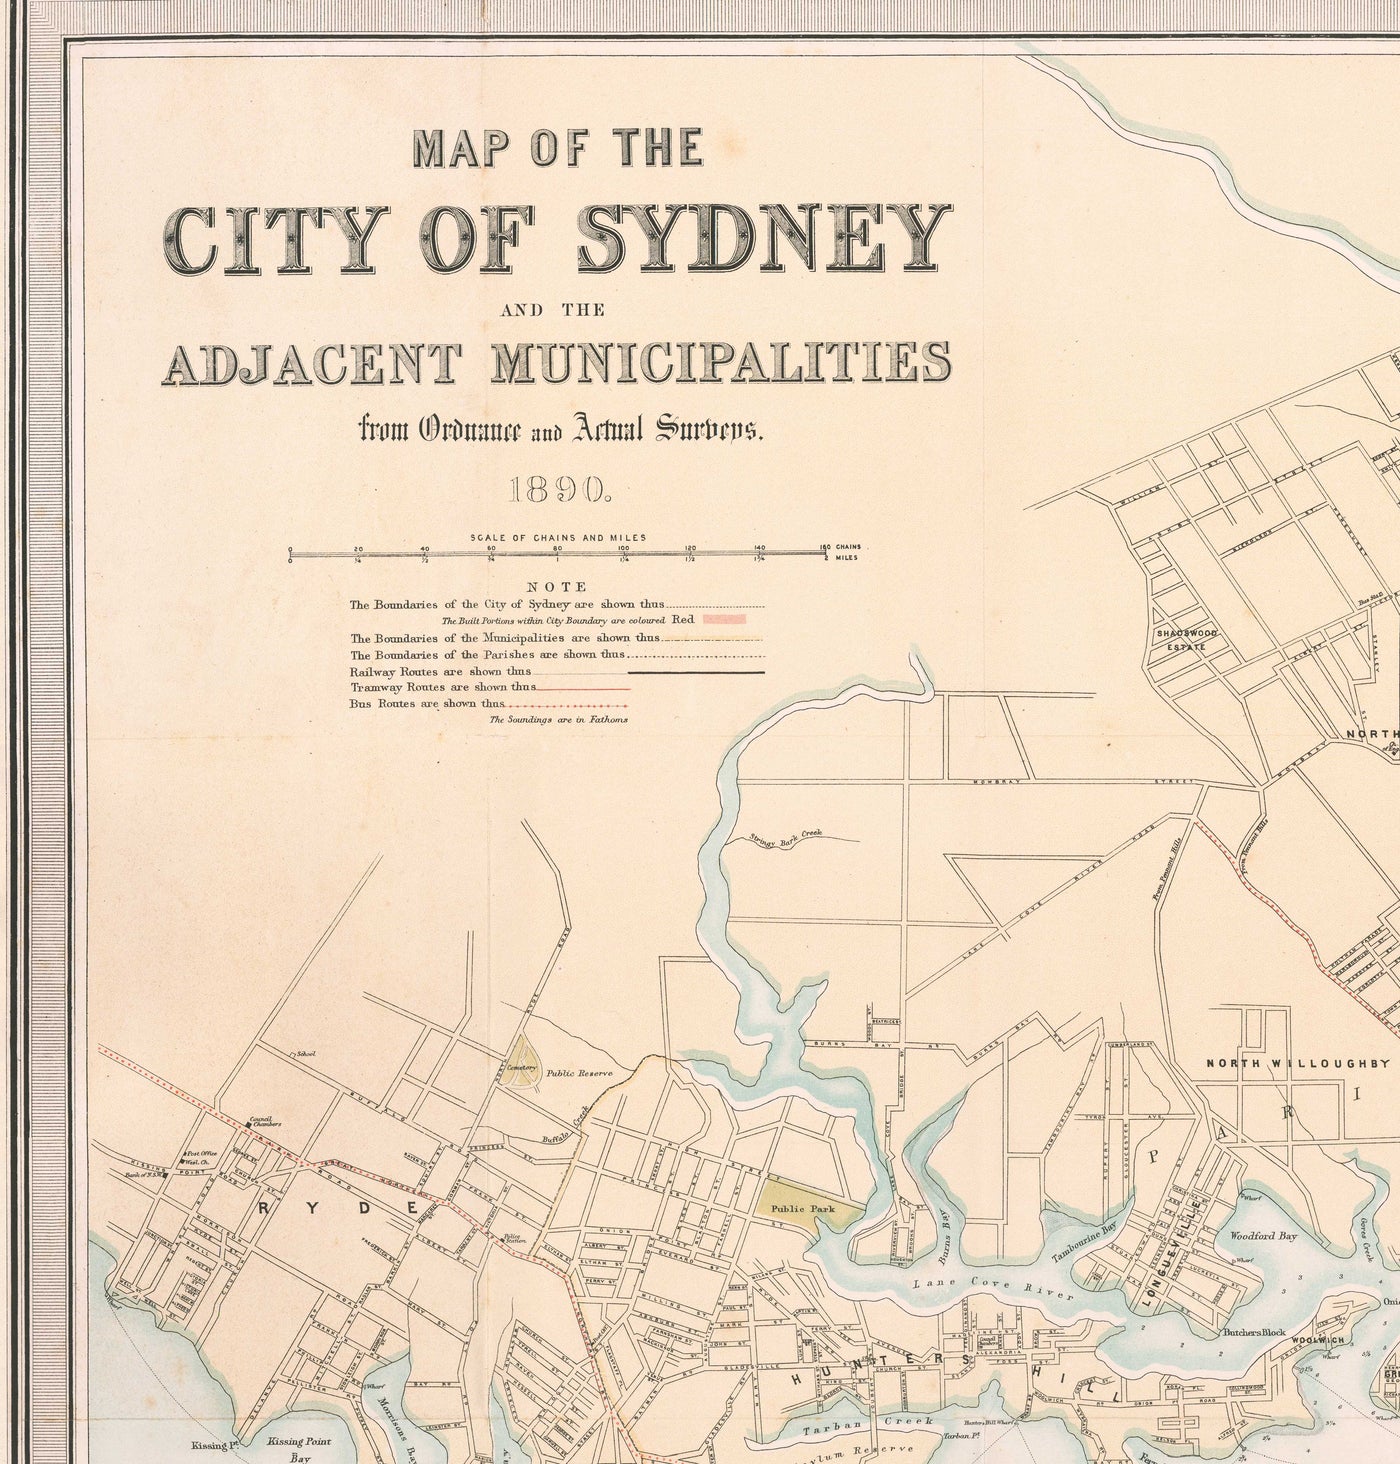 Alte Karte von Sydney aus dem Jahr 1890 von Bartholomew – Port Jackson, Potts Point, Parramatta River, Botany Bay, Darling Point